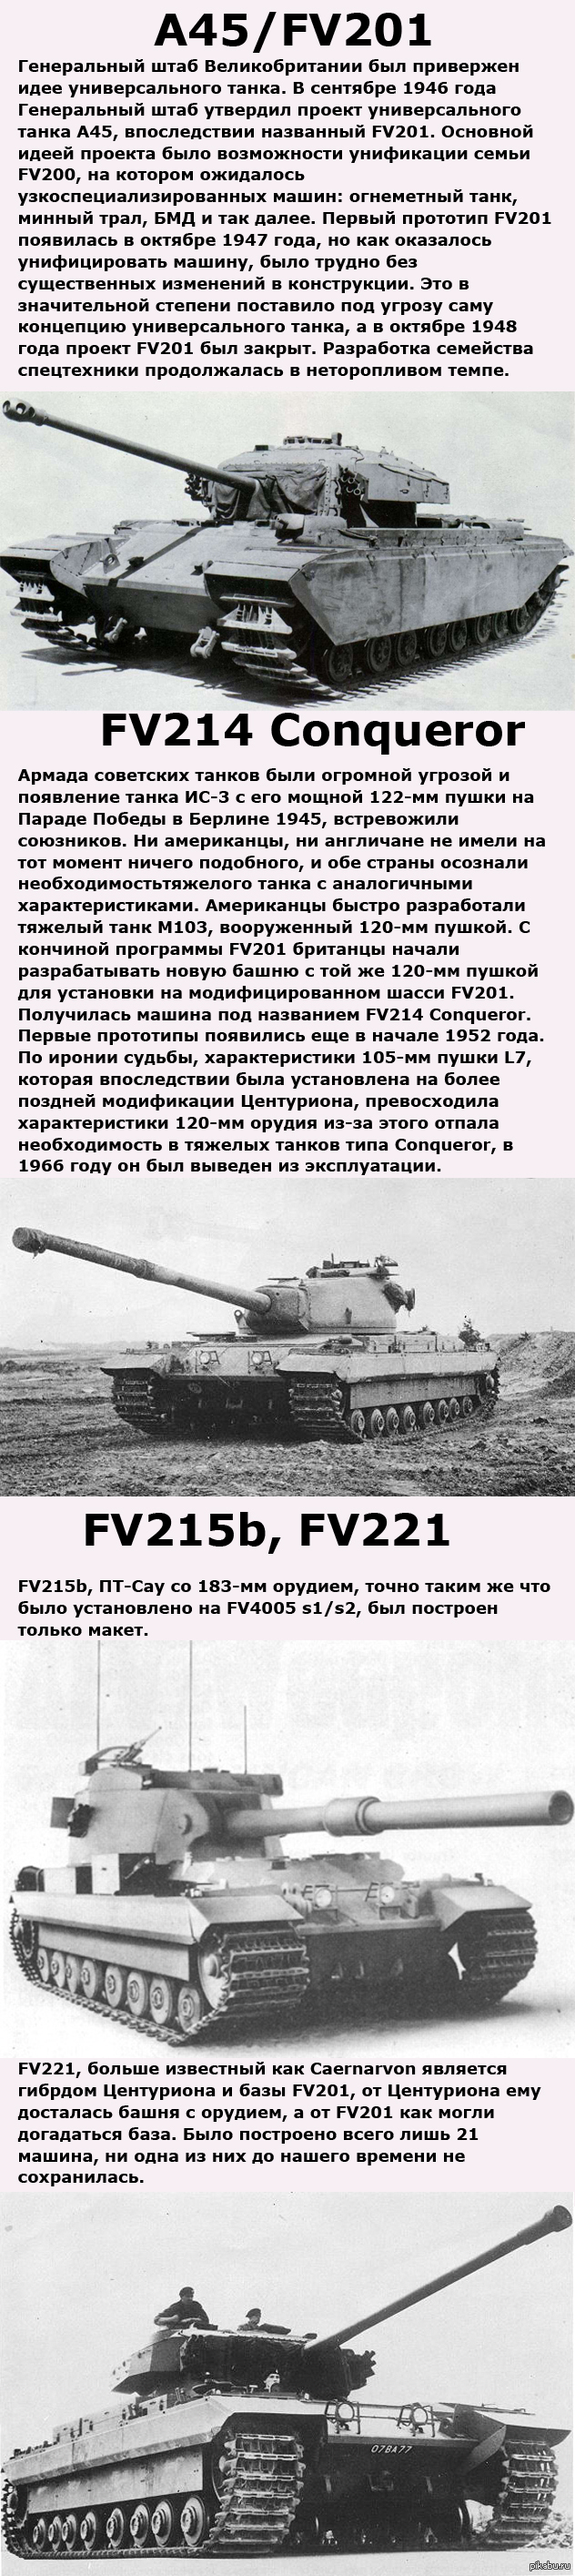       FV200   FV4005 <a href="http://pikabu.ru/story/dlinnopost_o_britanskom_fv4005_1617491">http://pikabu.ru/story/_1617491</a>